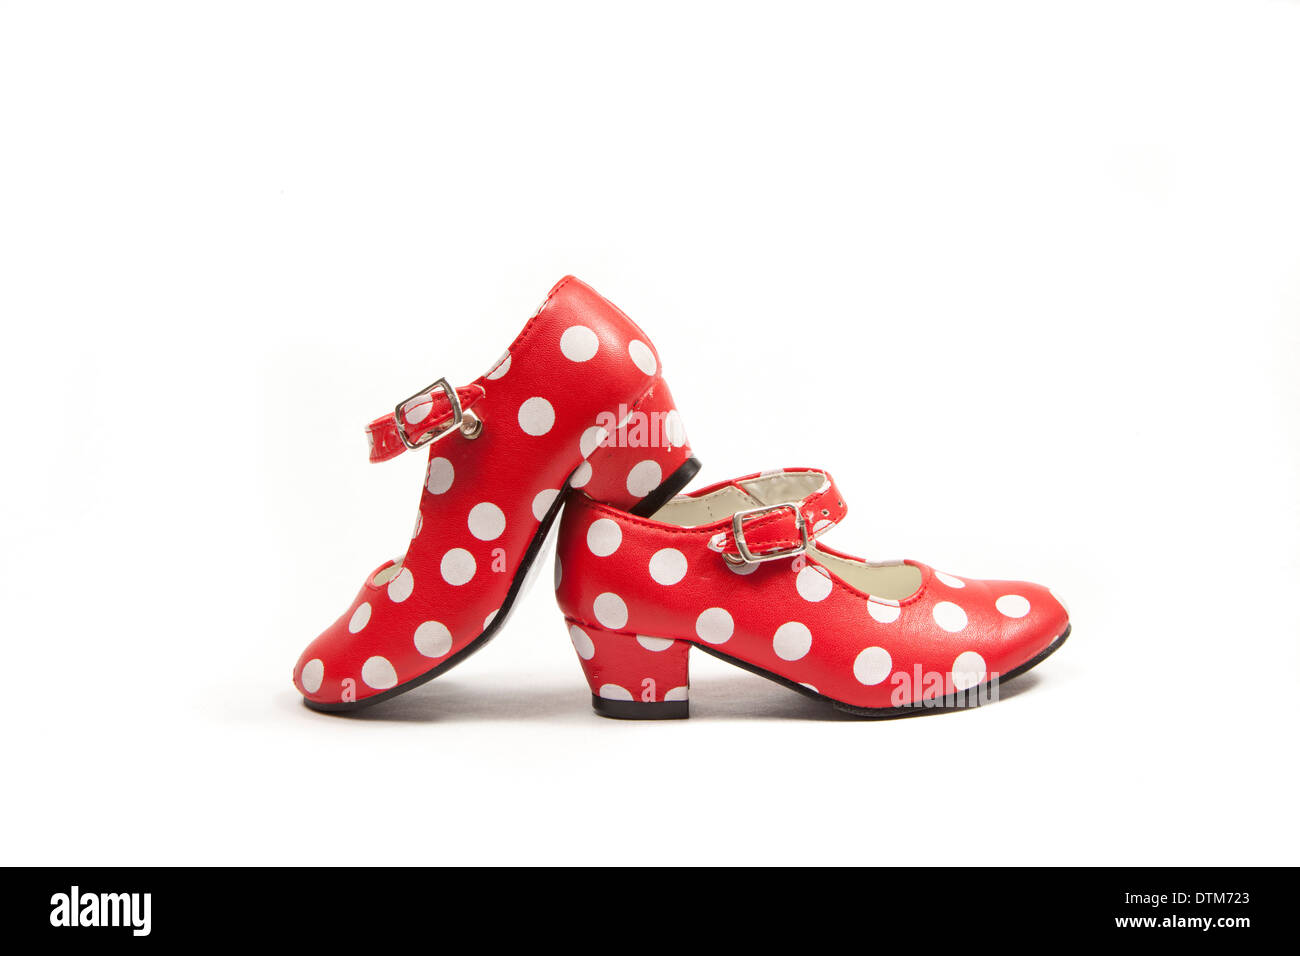 zwei Flamenco-Tanz gebrauchte Schuhe mit Polka Dots. Stockfoto